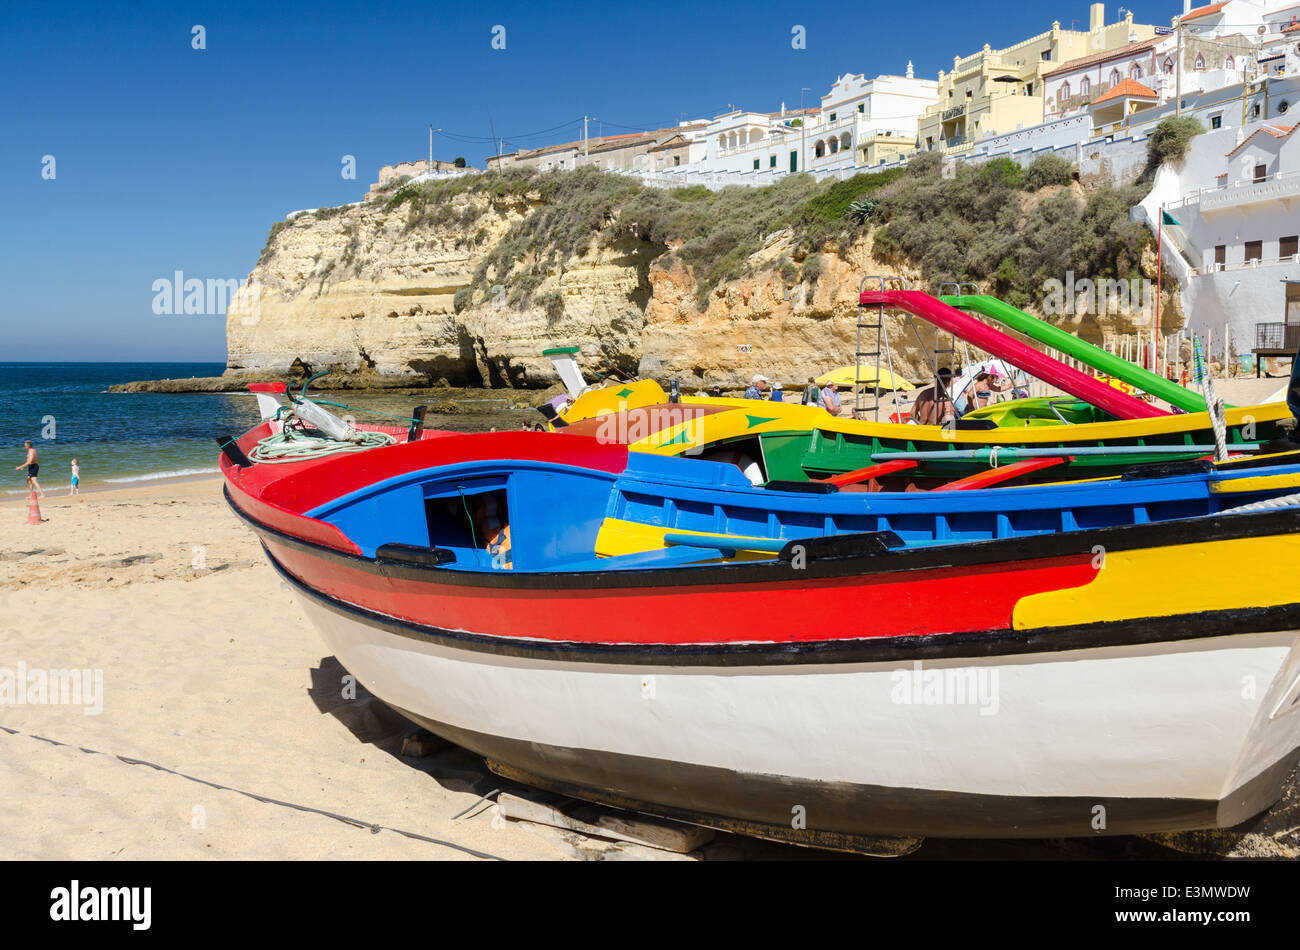 Botes de pesca de madera pintada en colores brillantes en la playa